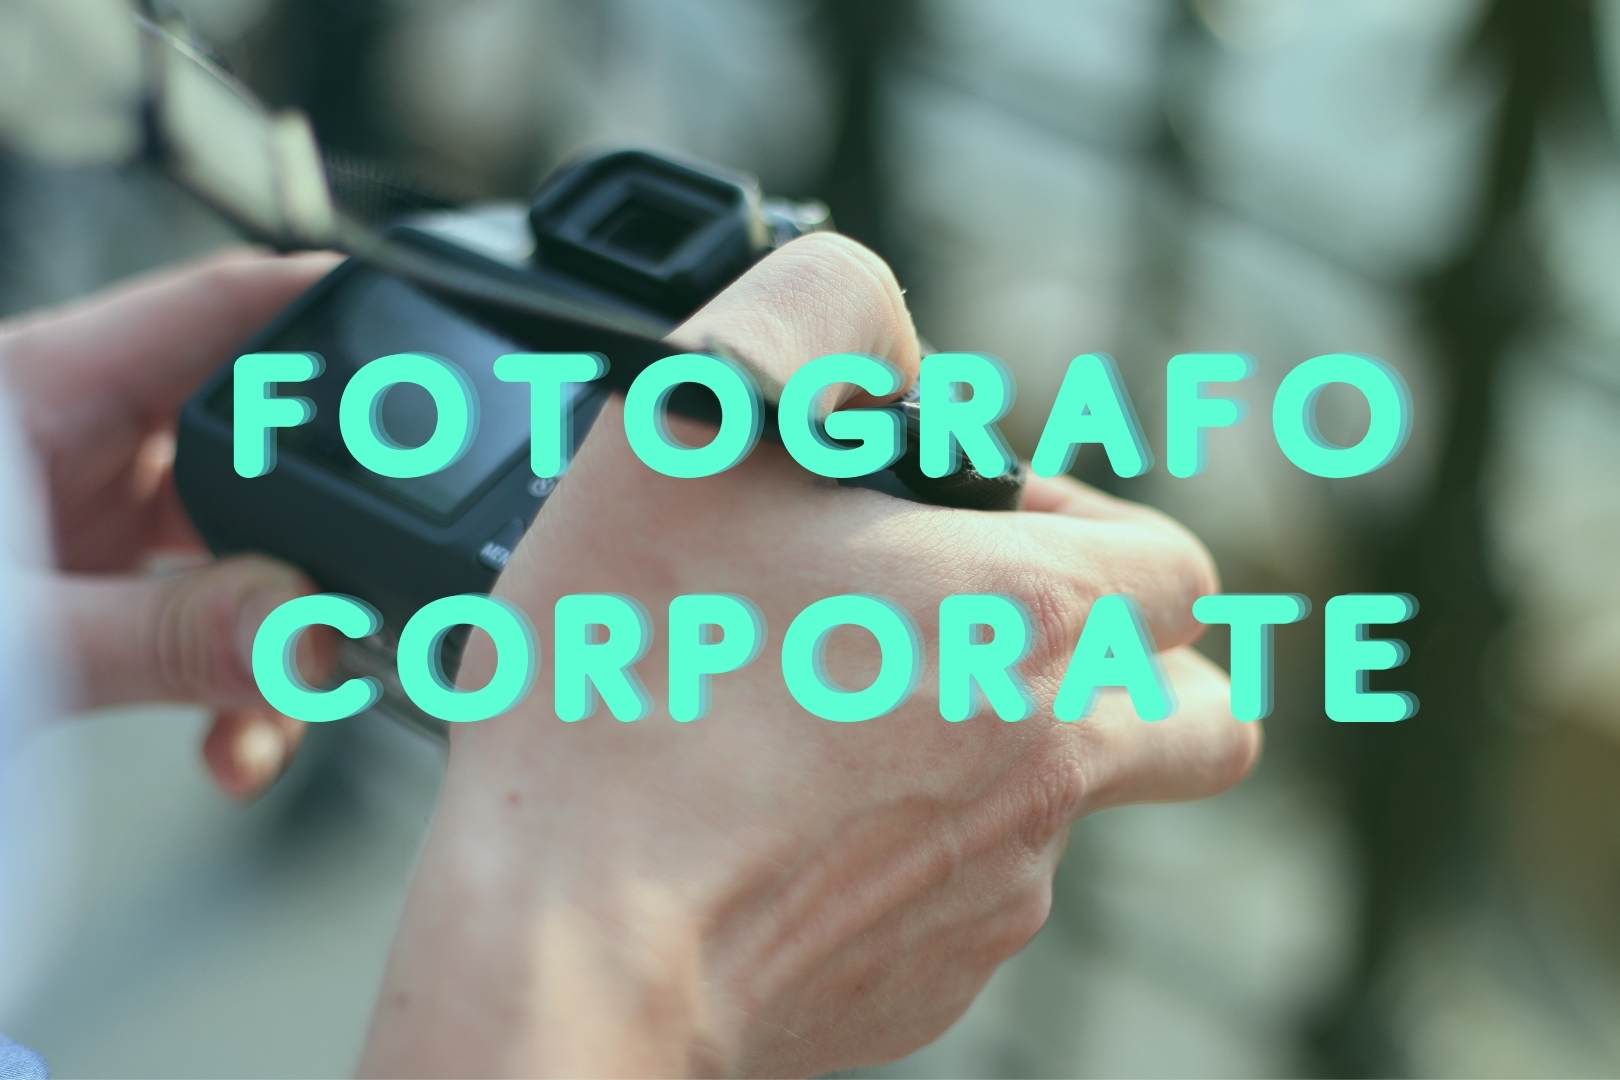 Fotografo corporate Torino: cosa fa e i vantaggi per la tua azienda